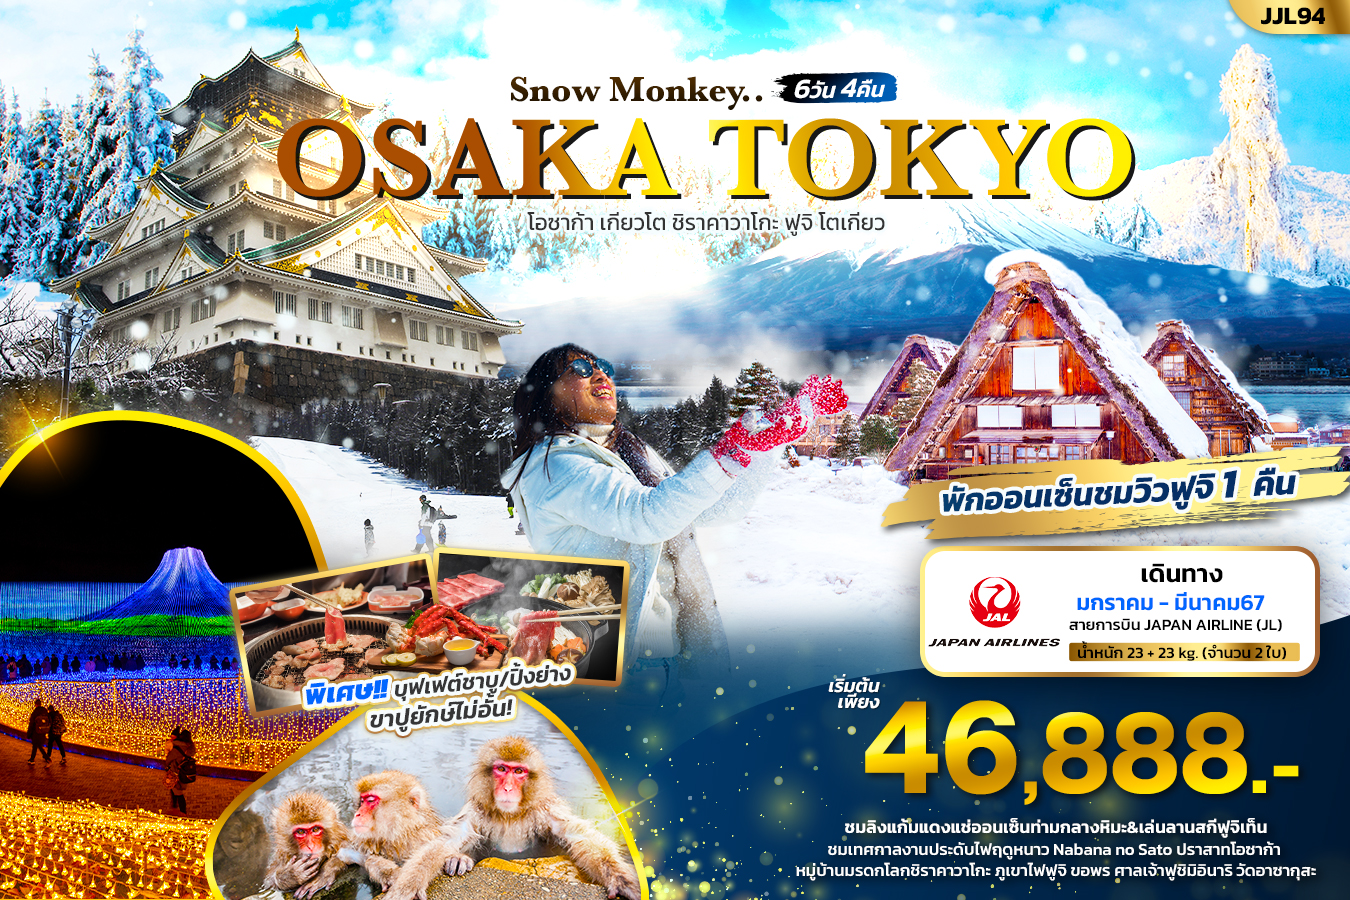 Snow-Monkey-OSAKA-TOKYO-6วัน4คืน-โอซาก้า-เกียวโต-ชิราคาวาโกะ-ฟูจิ-โตเกียว